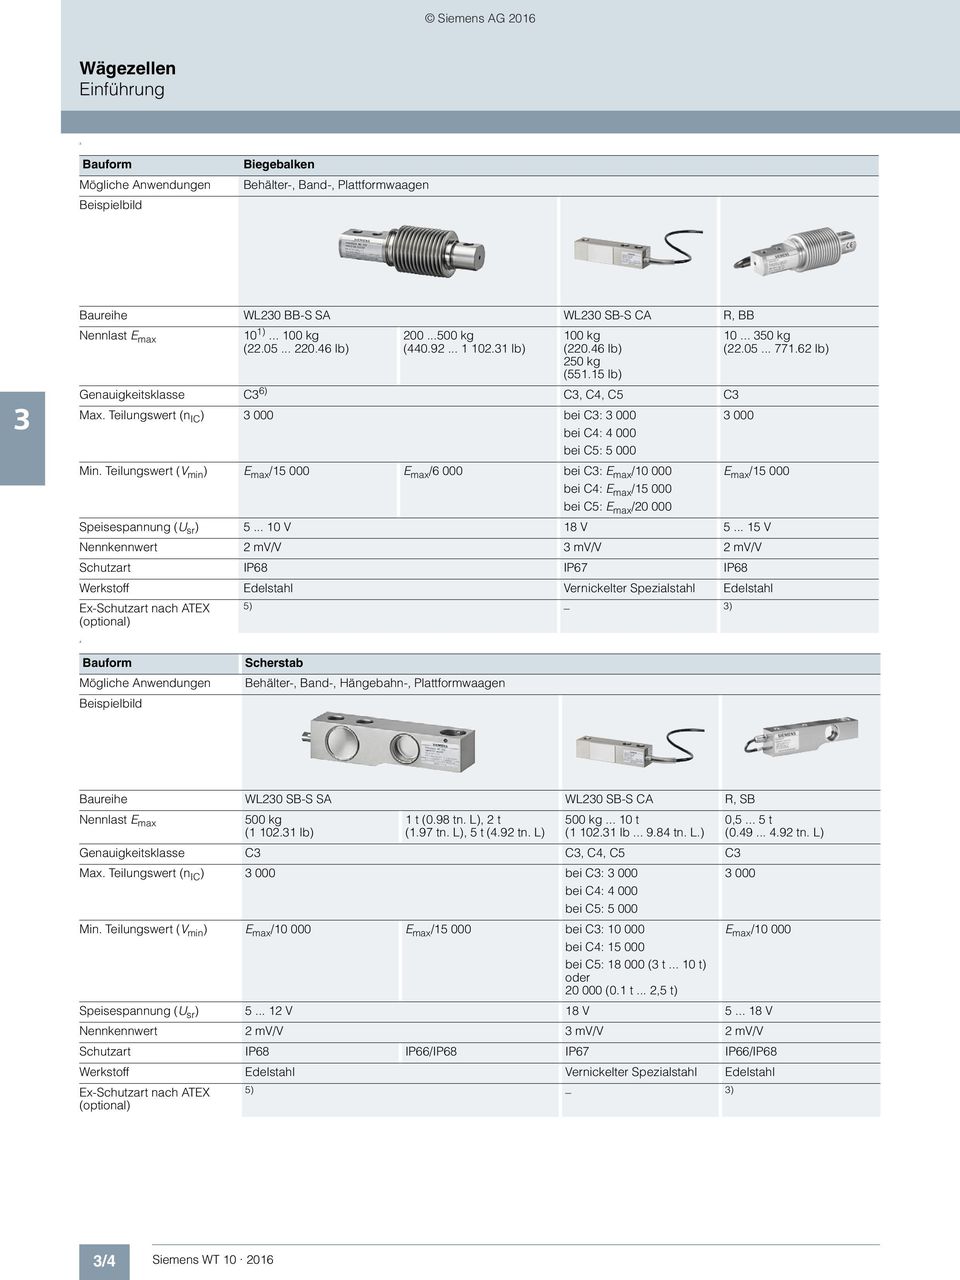 Siemens Ag 18 Siwarex Wl230 S Sa 3 18 Wagezelle 3 Grundplatte Mit Uberlastschutz 3 21 Elastomerlager 3 22 Kompakteinbaueinheit Pdf Free Download